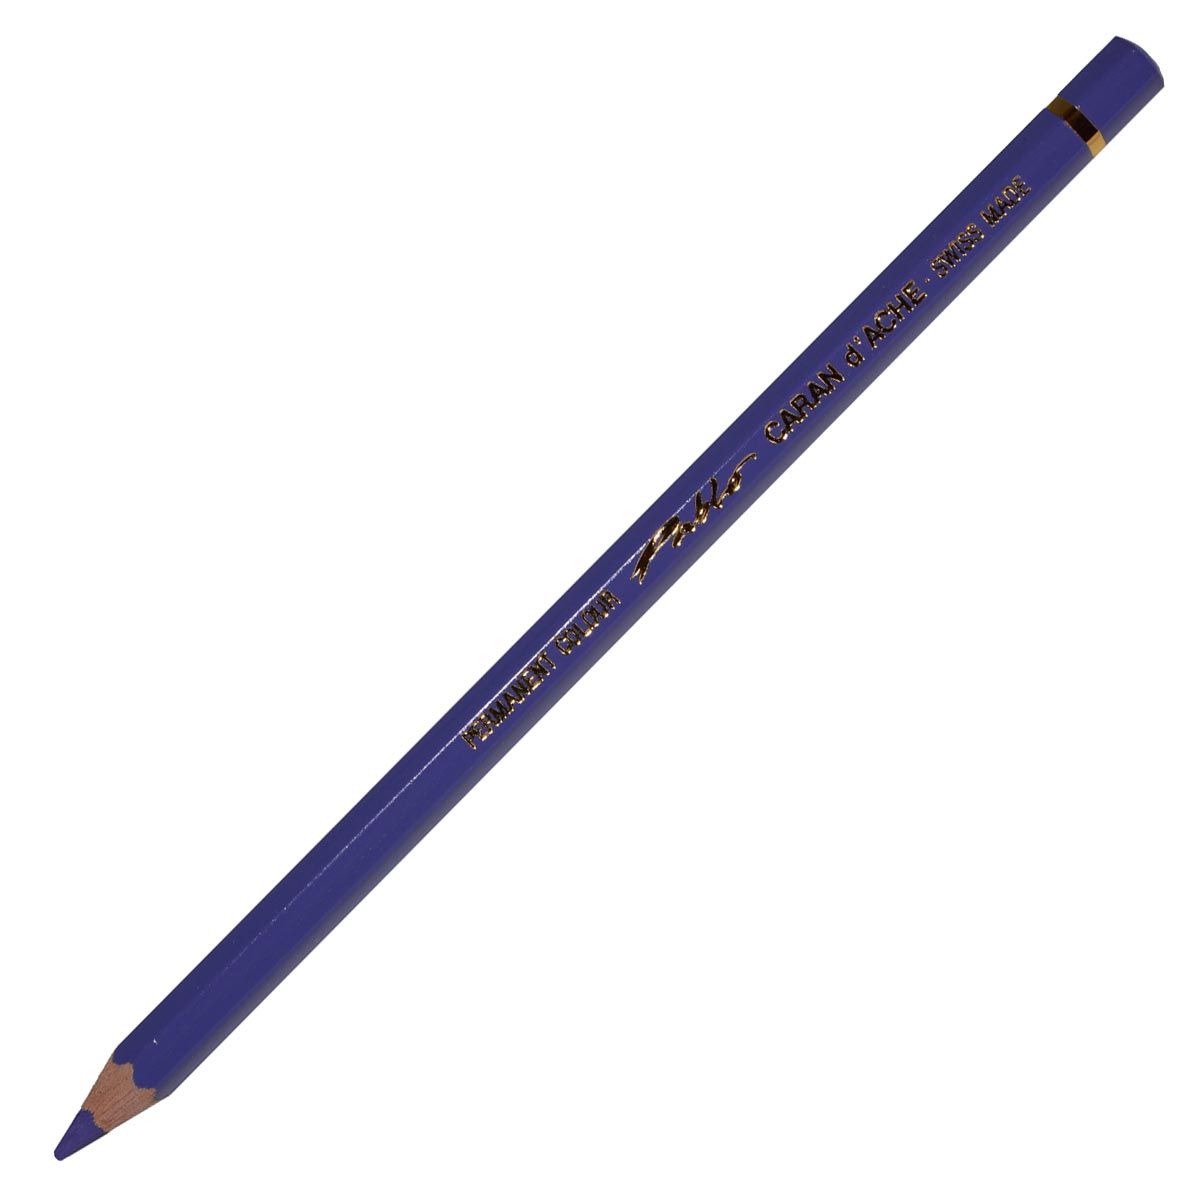 Caran d’Ache Pablo Coloured Pencil - Periwinkle Blue 131